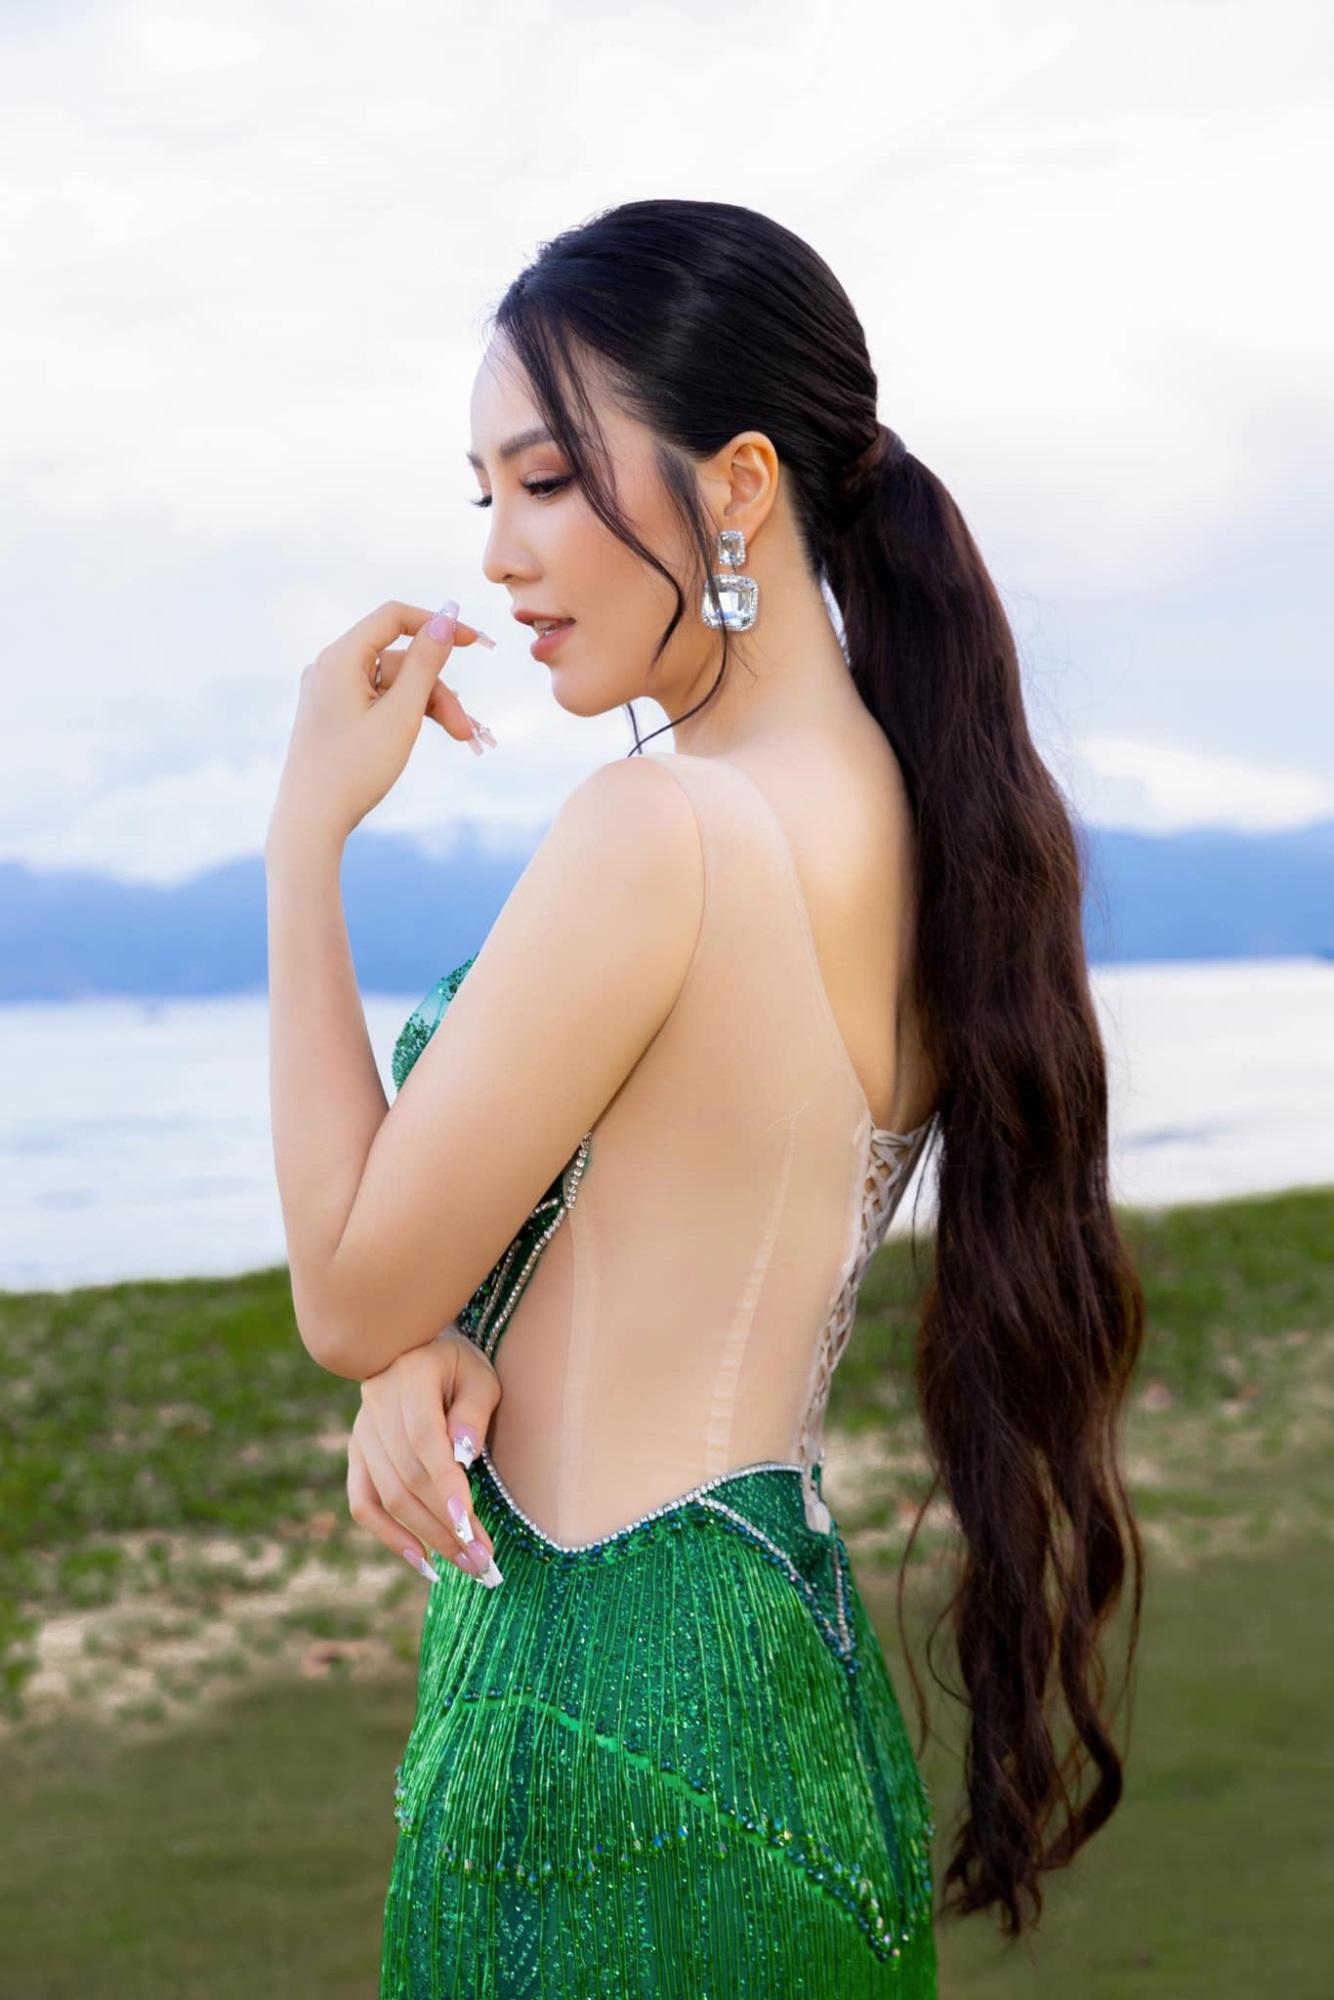 Nhan sắc cực phẩm Á hậu Thụy Vân, nữ MC sành điệu bậc nhất VTV, từng suýt chạm vương miện hoa hậu-7